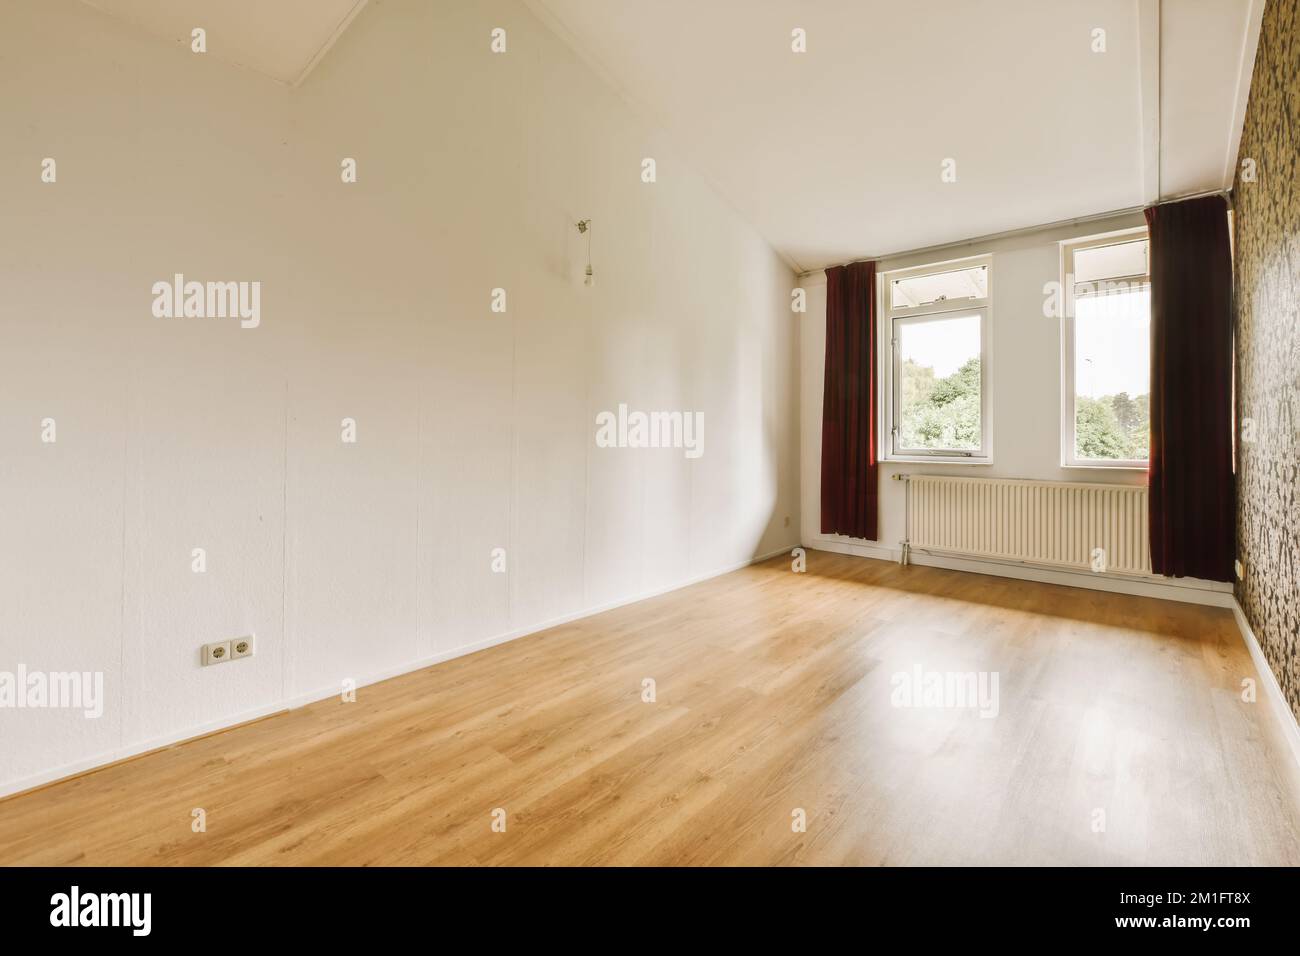 Ein leeres Wohnzimmer mit Holzfußboden und Tapeten an den Wänden in diesem Wohnbereich Stockfoto